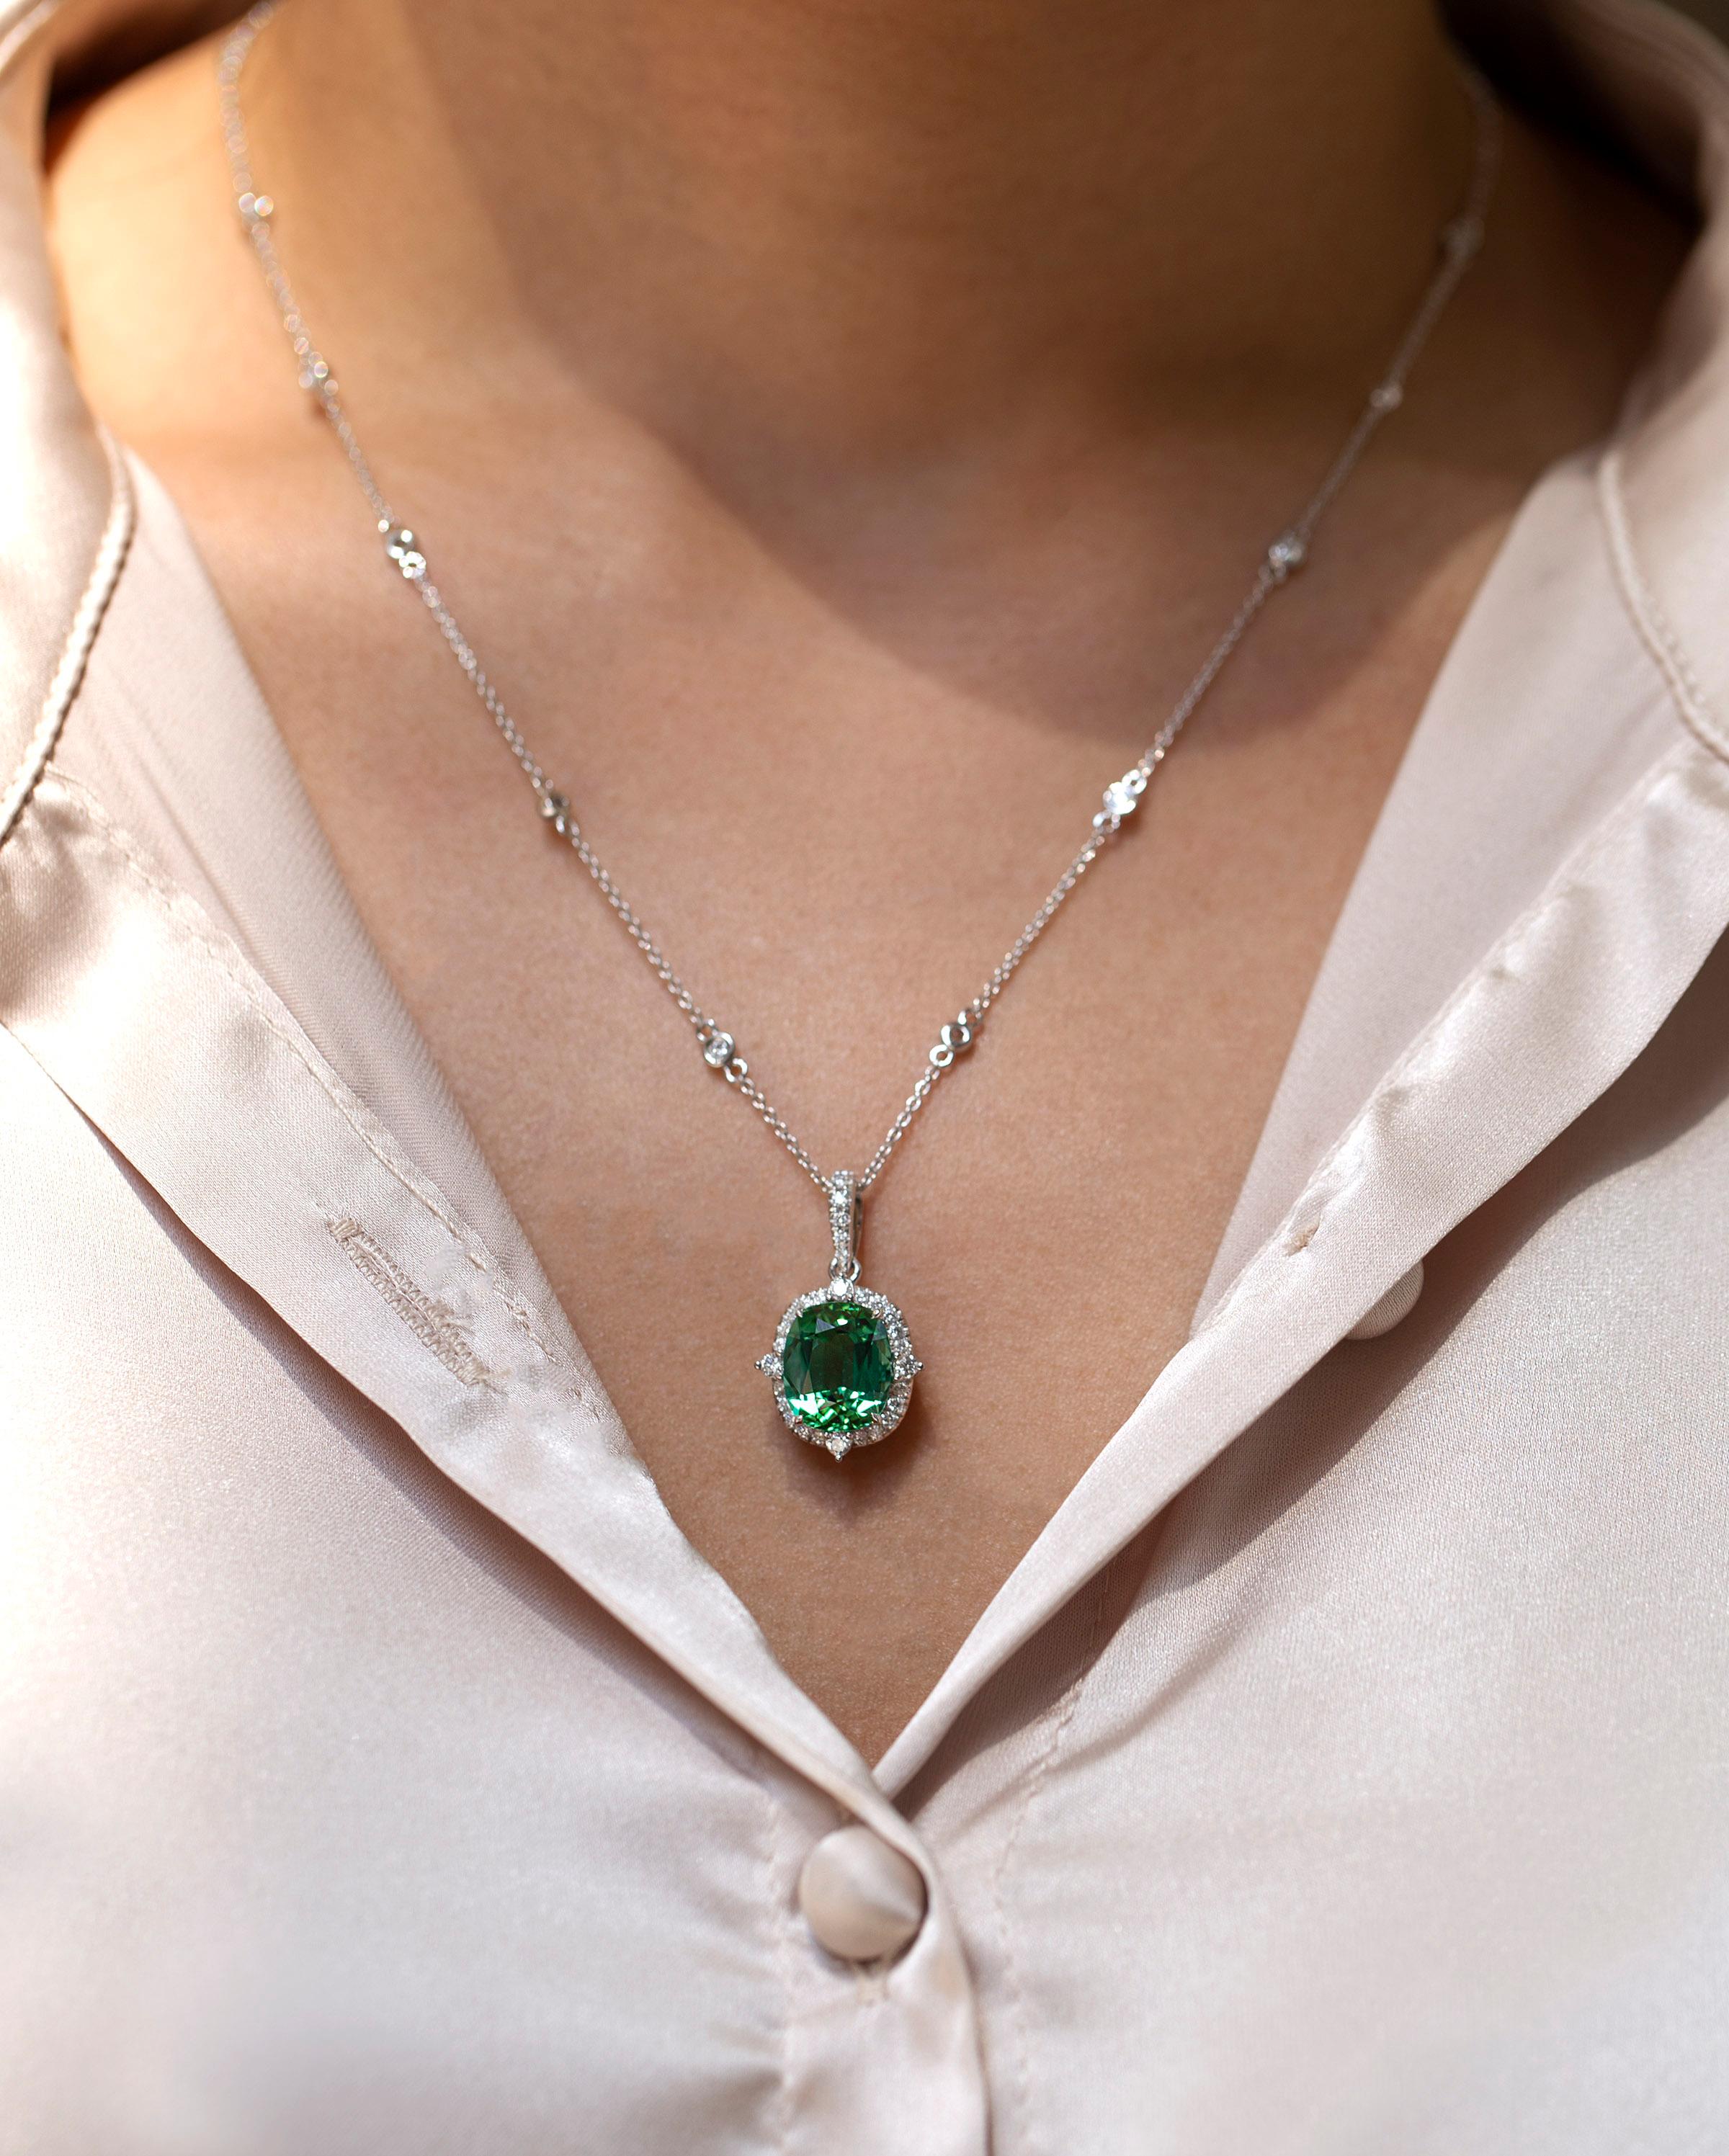 5 carat diamond necklace pendant